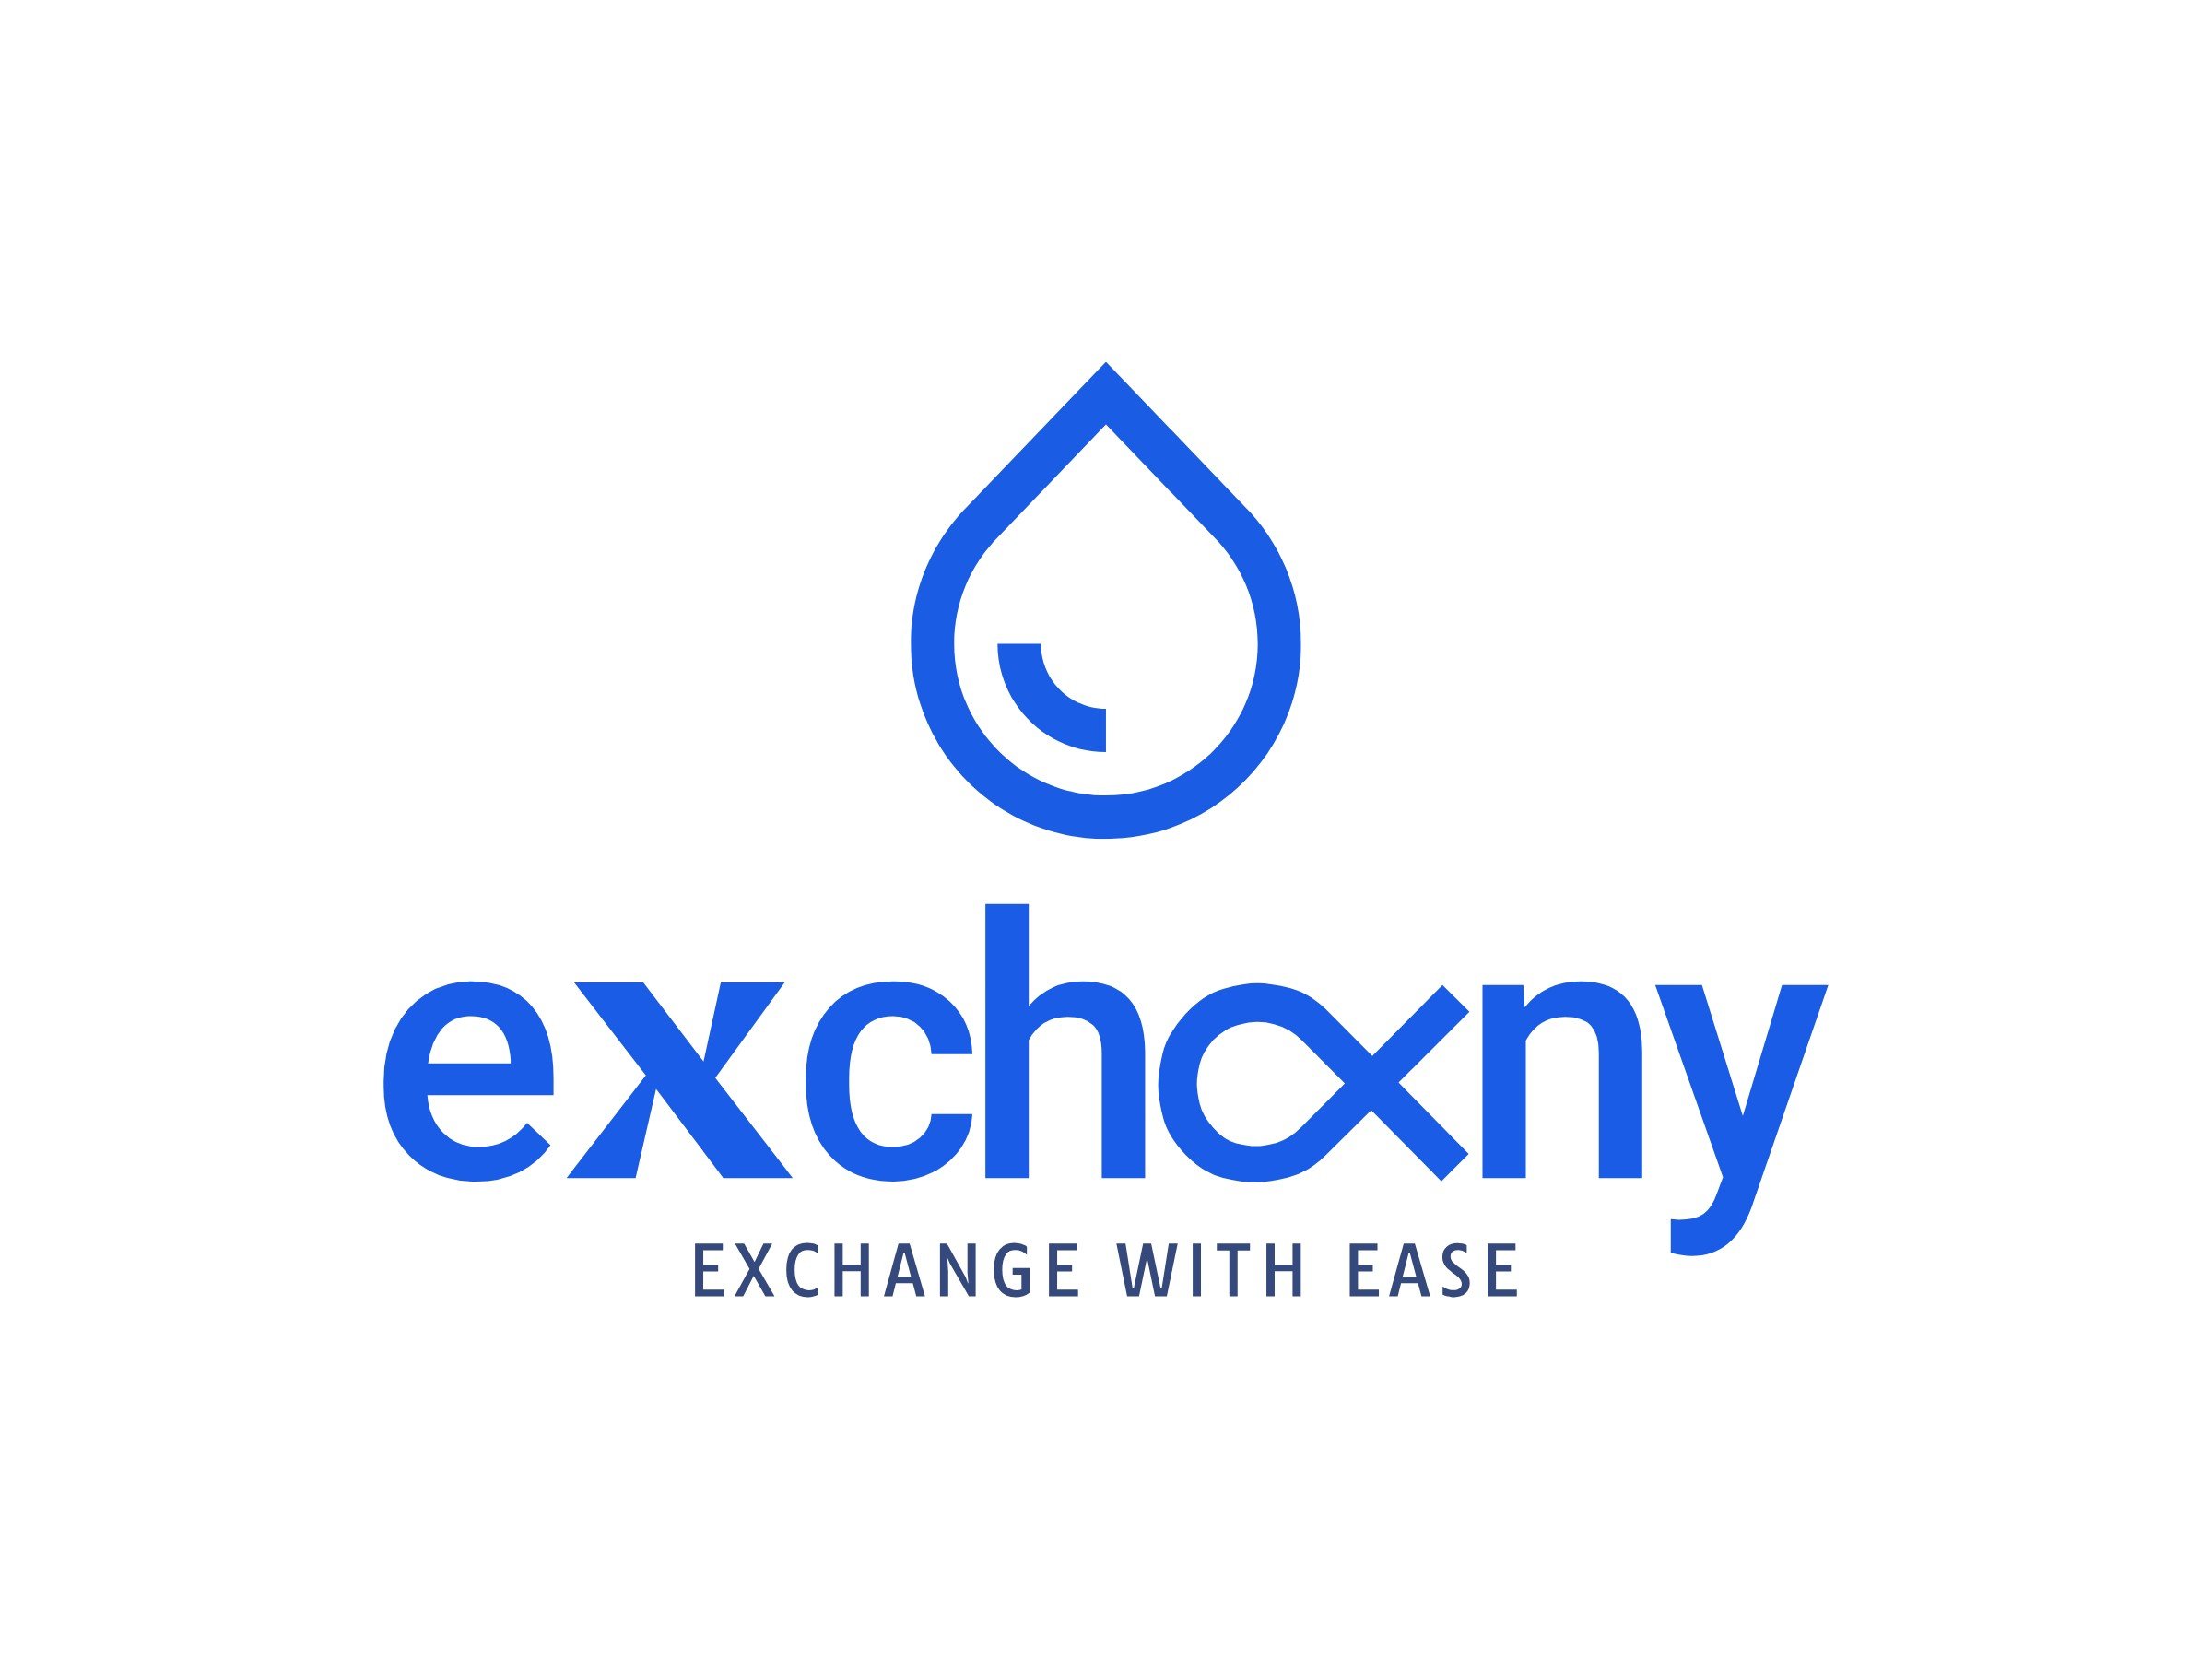 exchany logo design